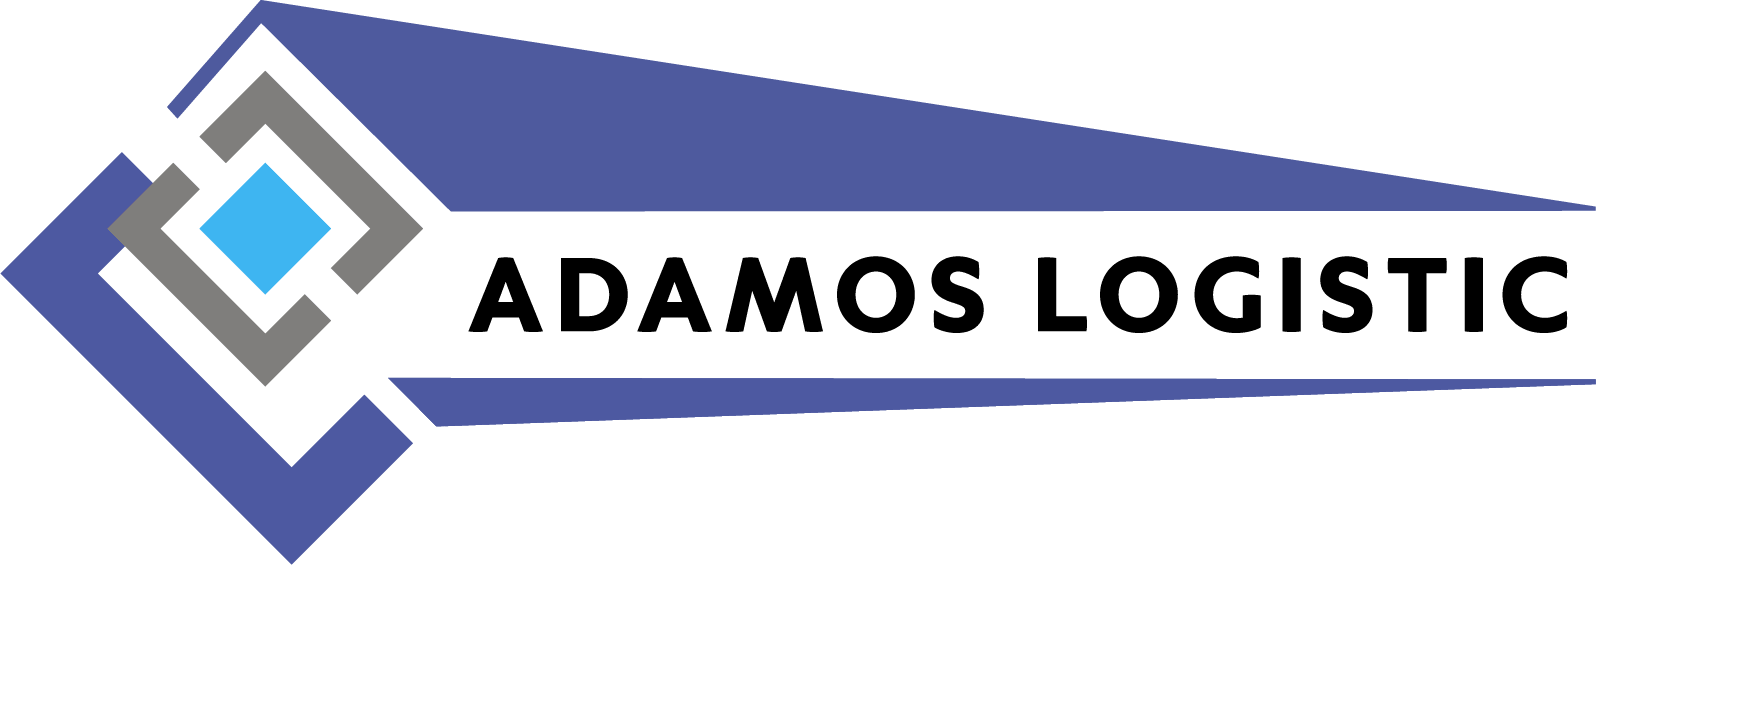 Компания "Adamos Logistic"